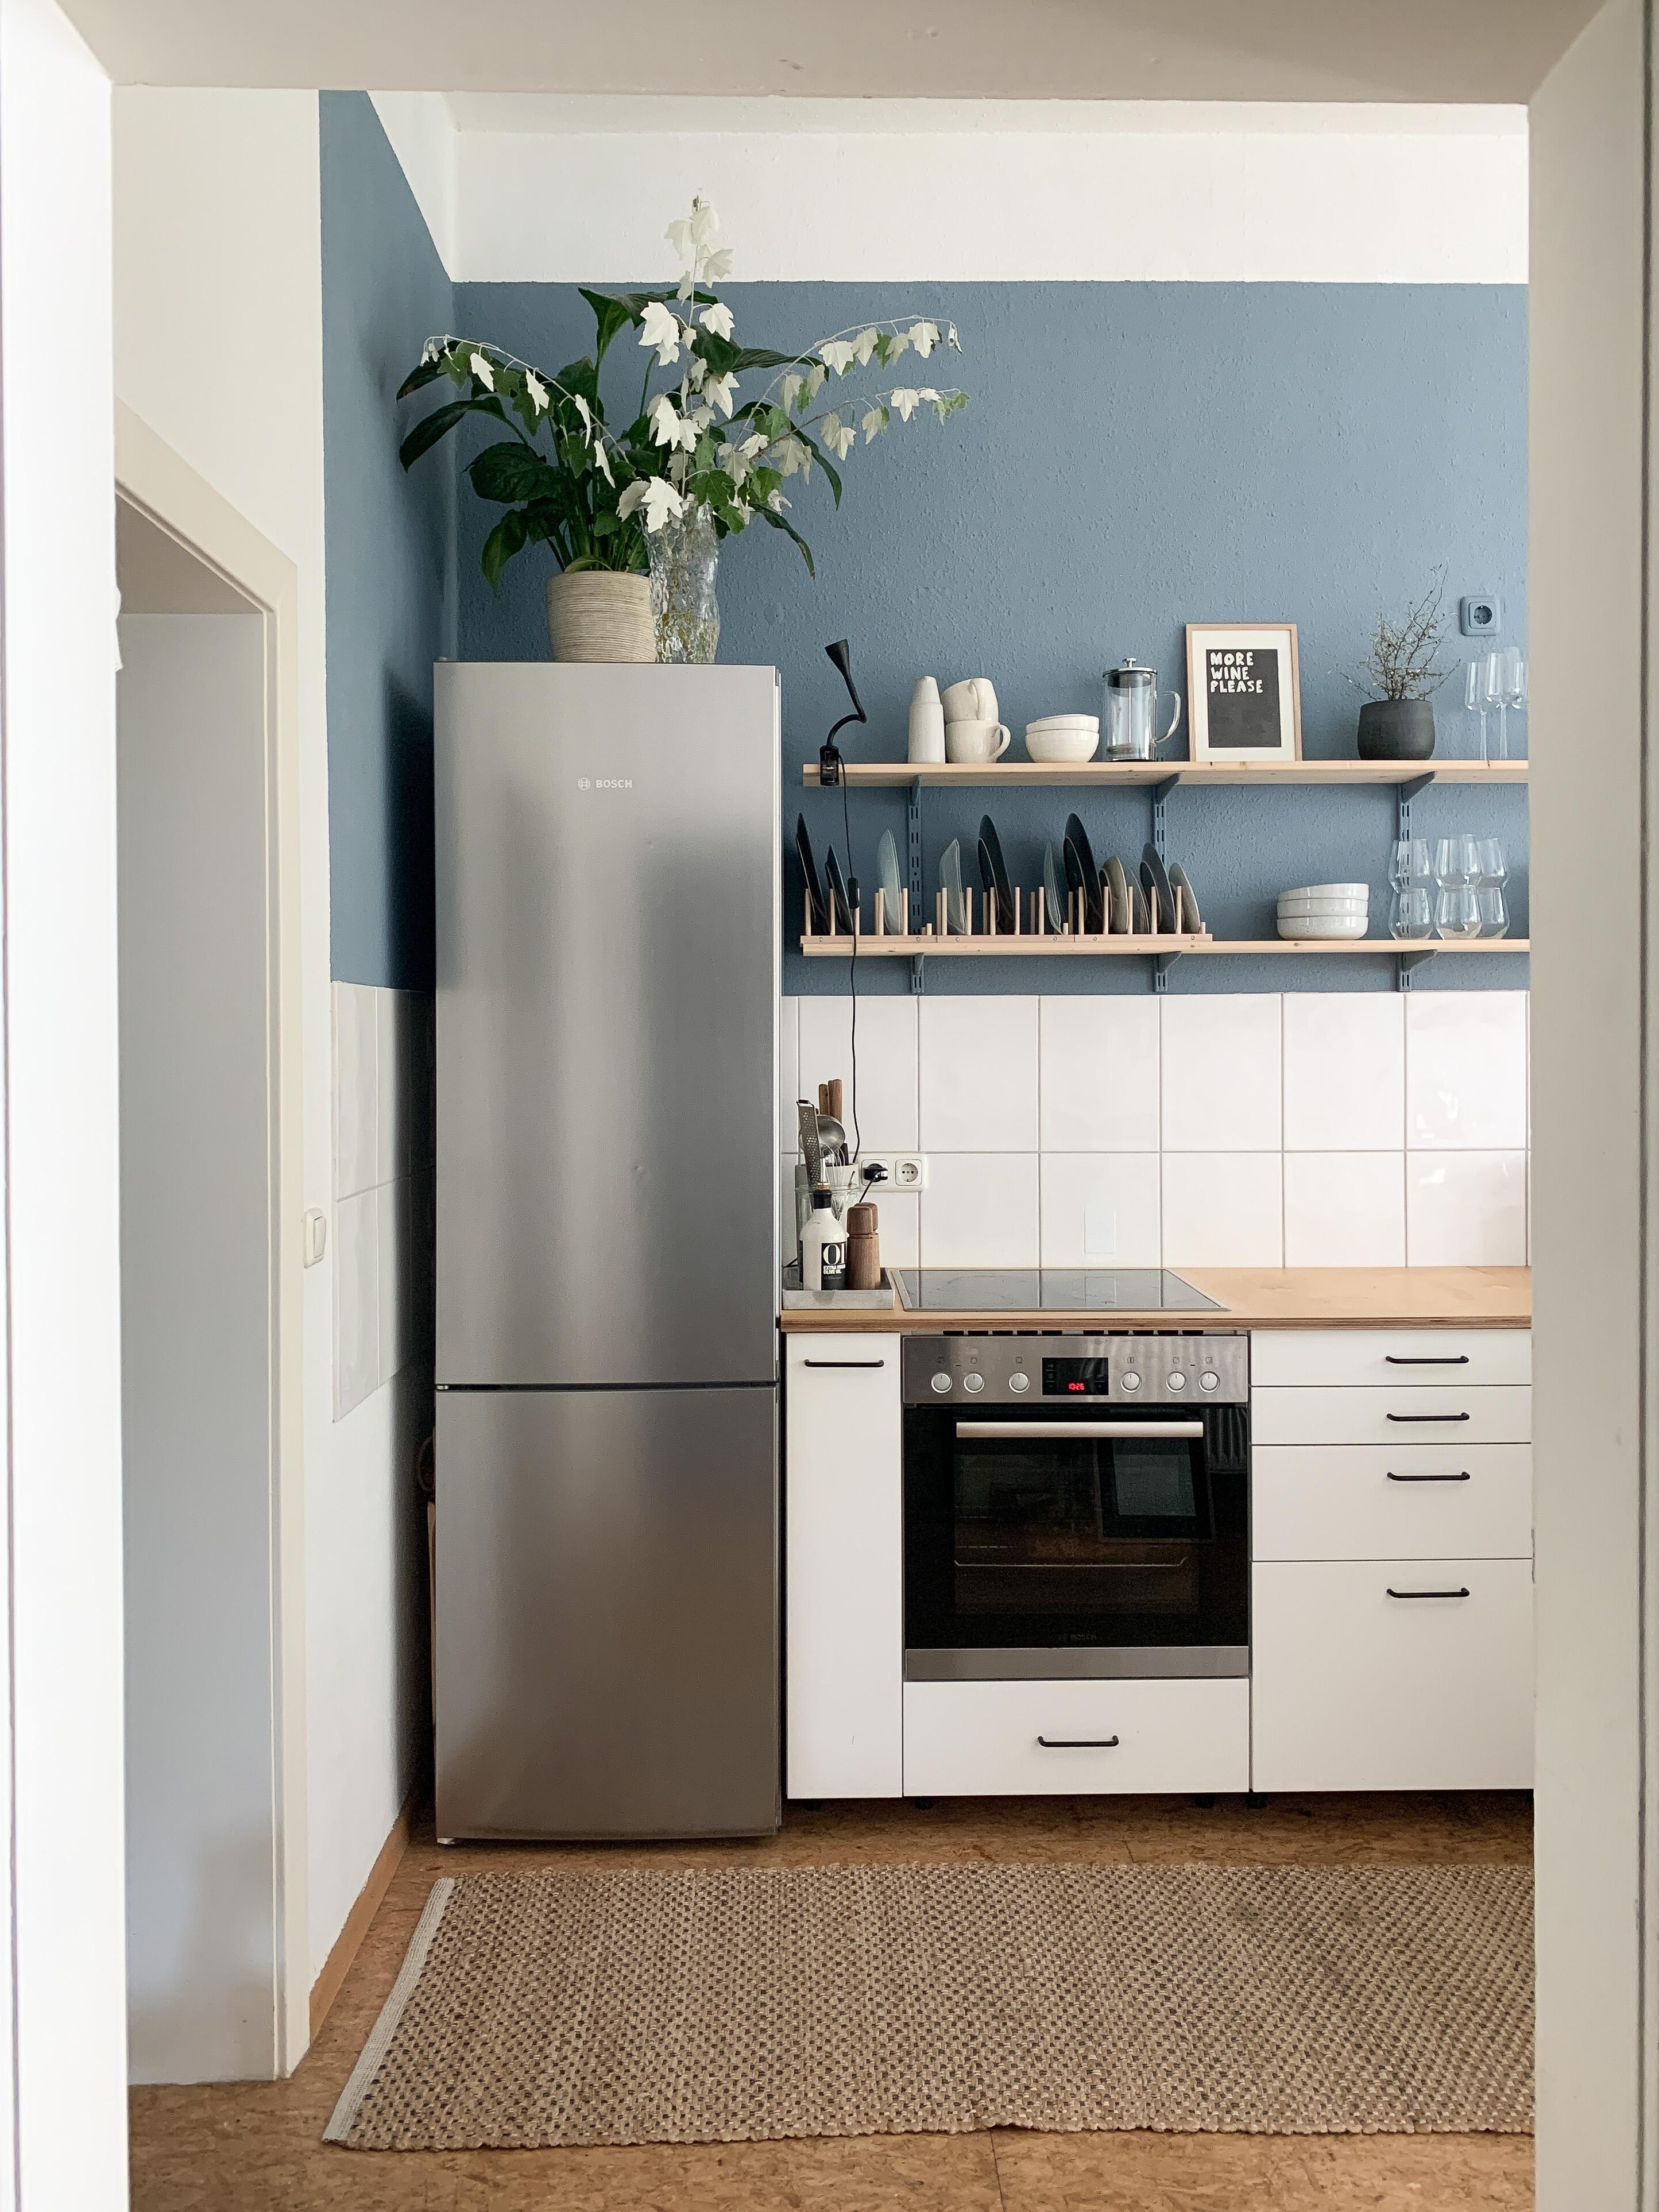 Blick vom Flur in die Küche 💙
#kitchen #bluekitchen #altbauküche